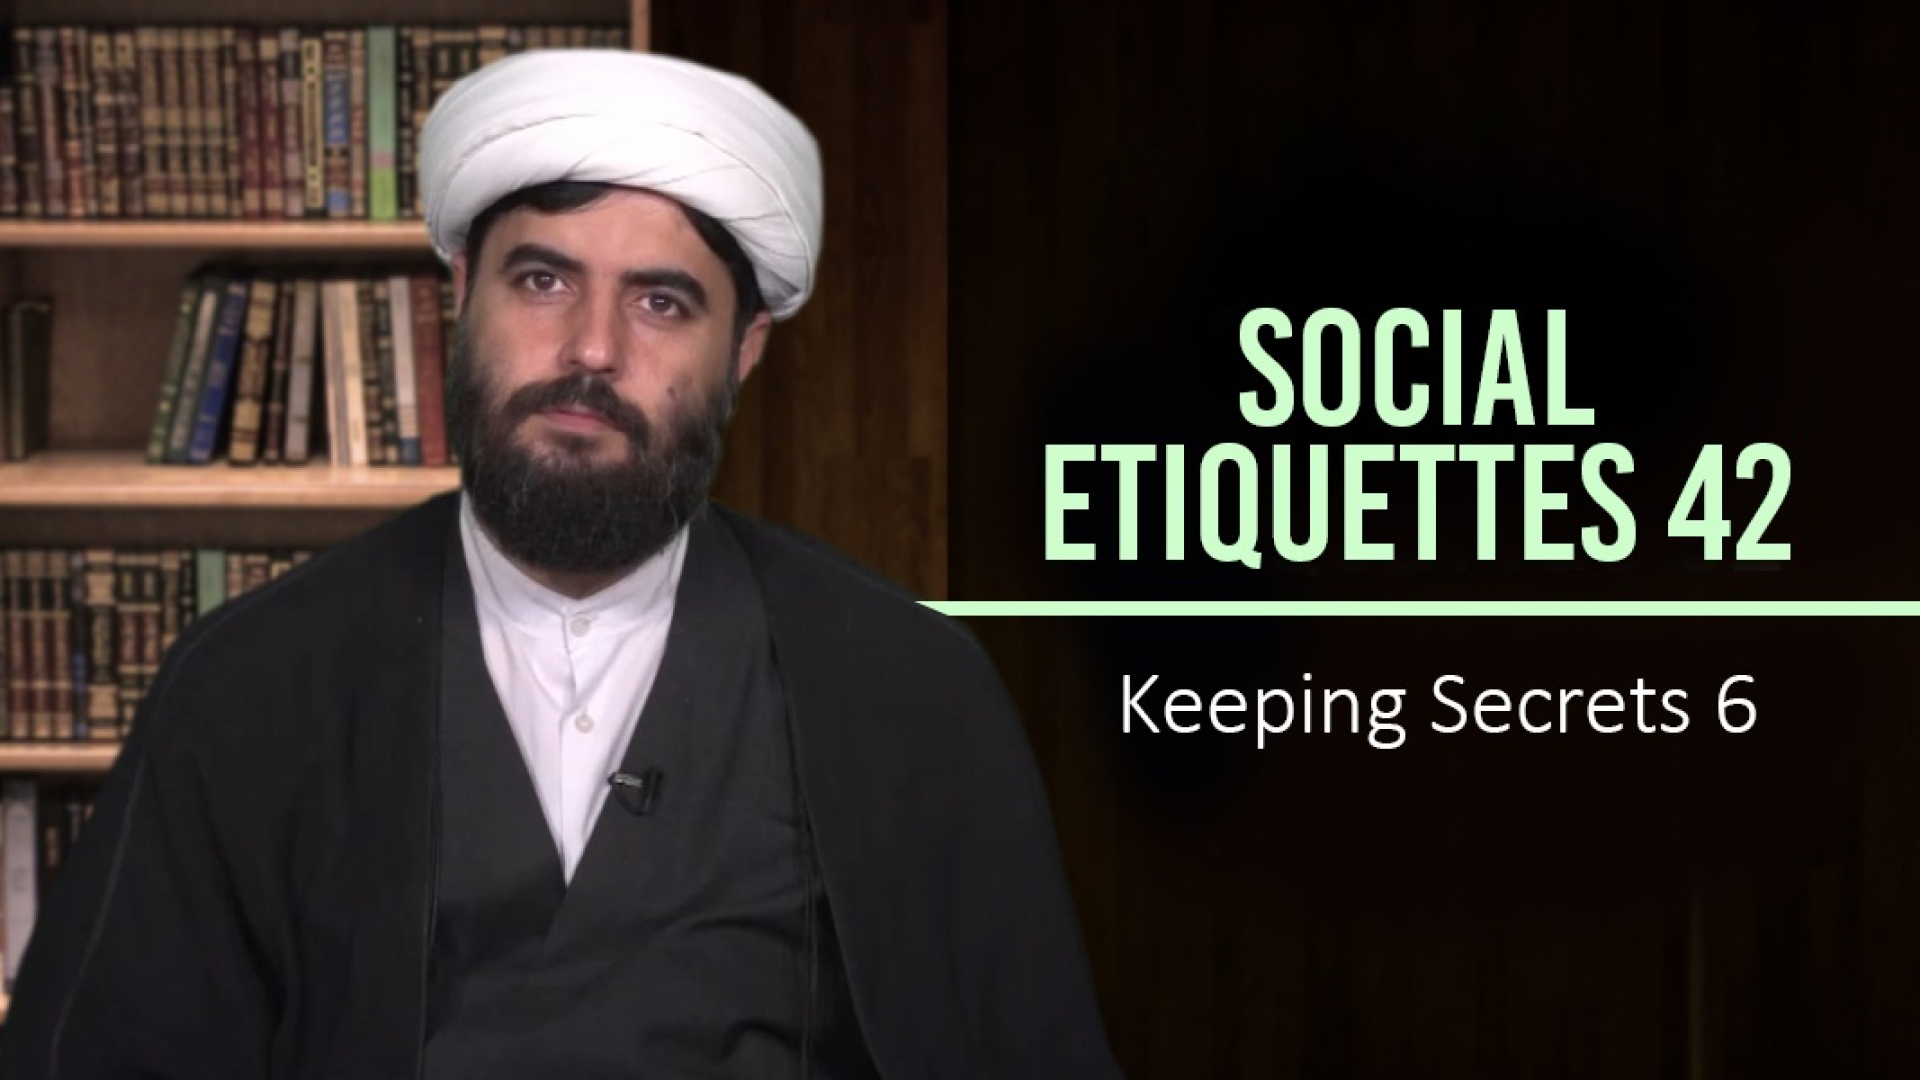 Social Etiquettes 42 | Keeping Secrets 6 | Farsi Sub English